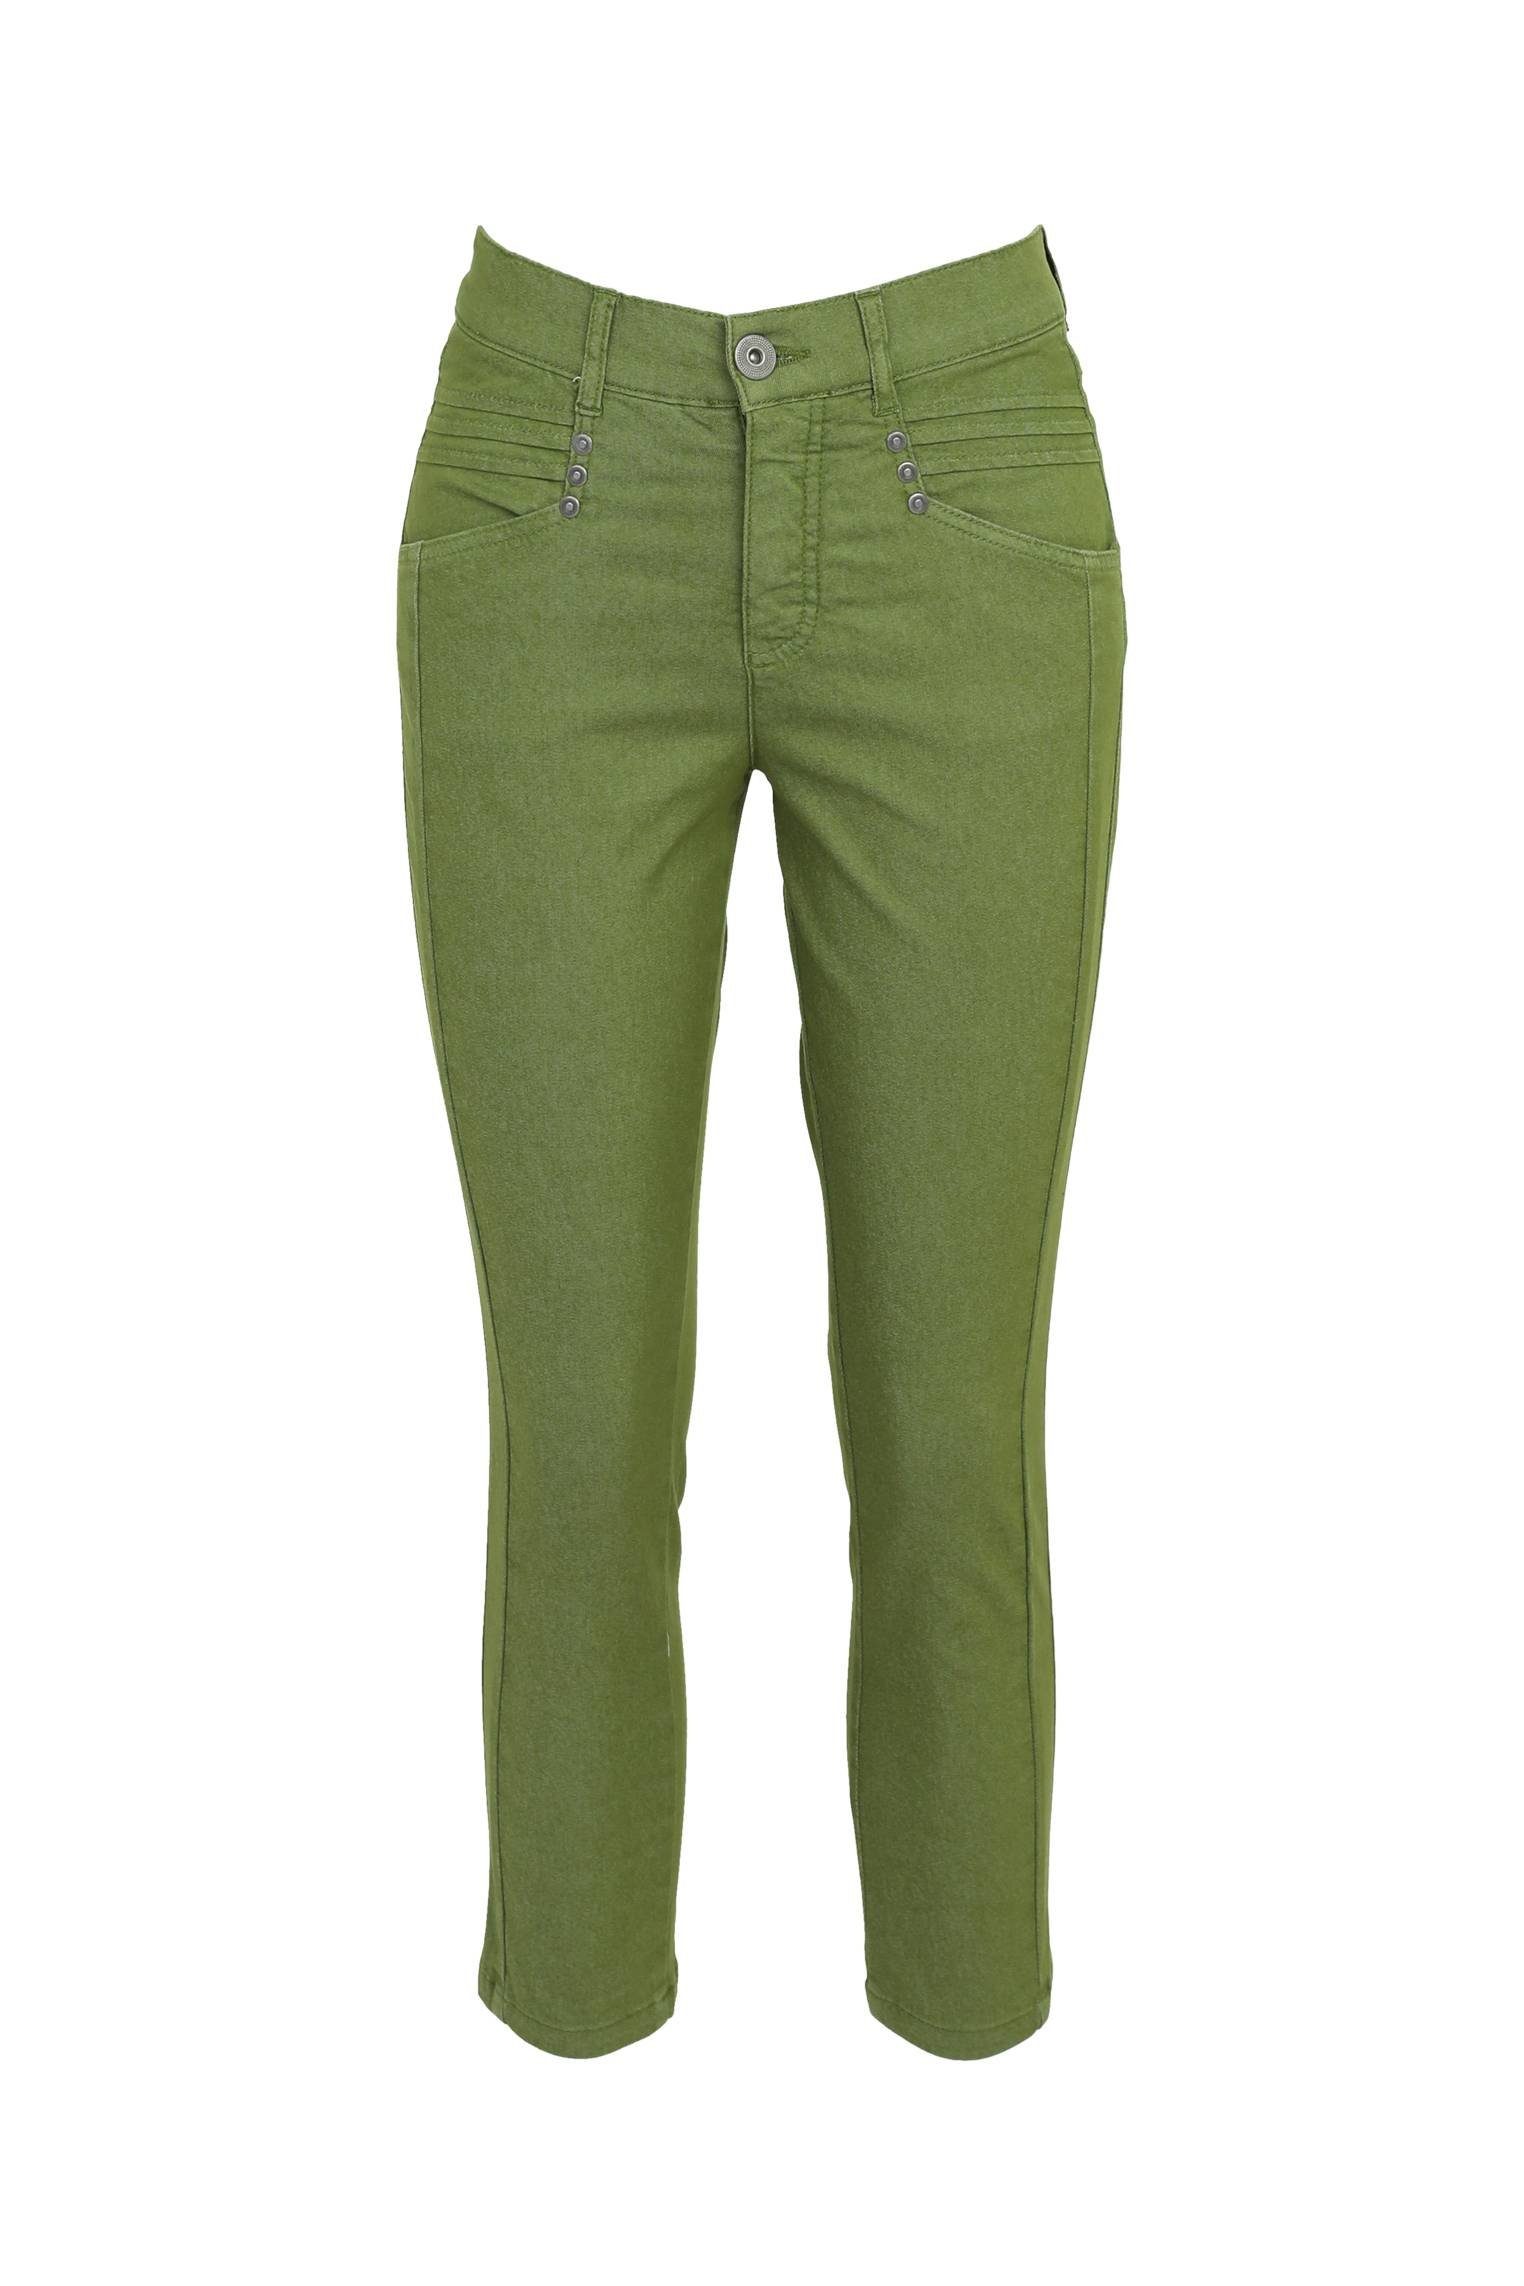 Cassis 5-Pocket-Jeans Slim-Fit-7/8-Jeans Mit Taschen Und Faltendetail 5